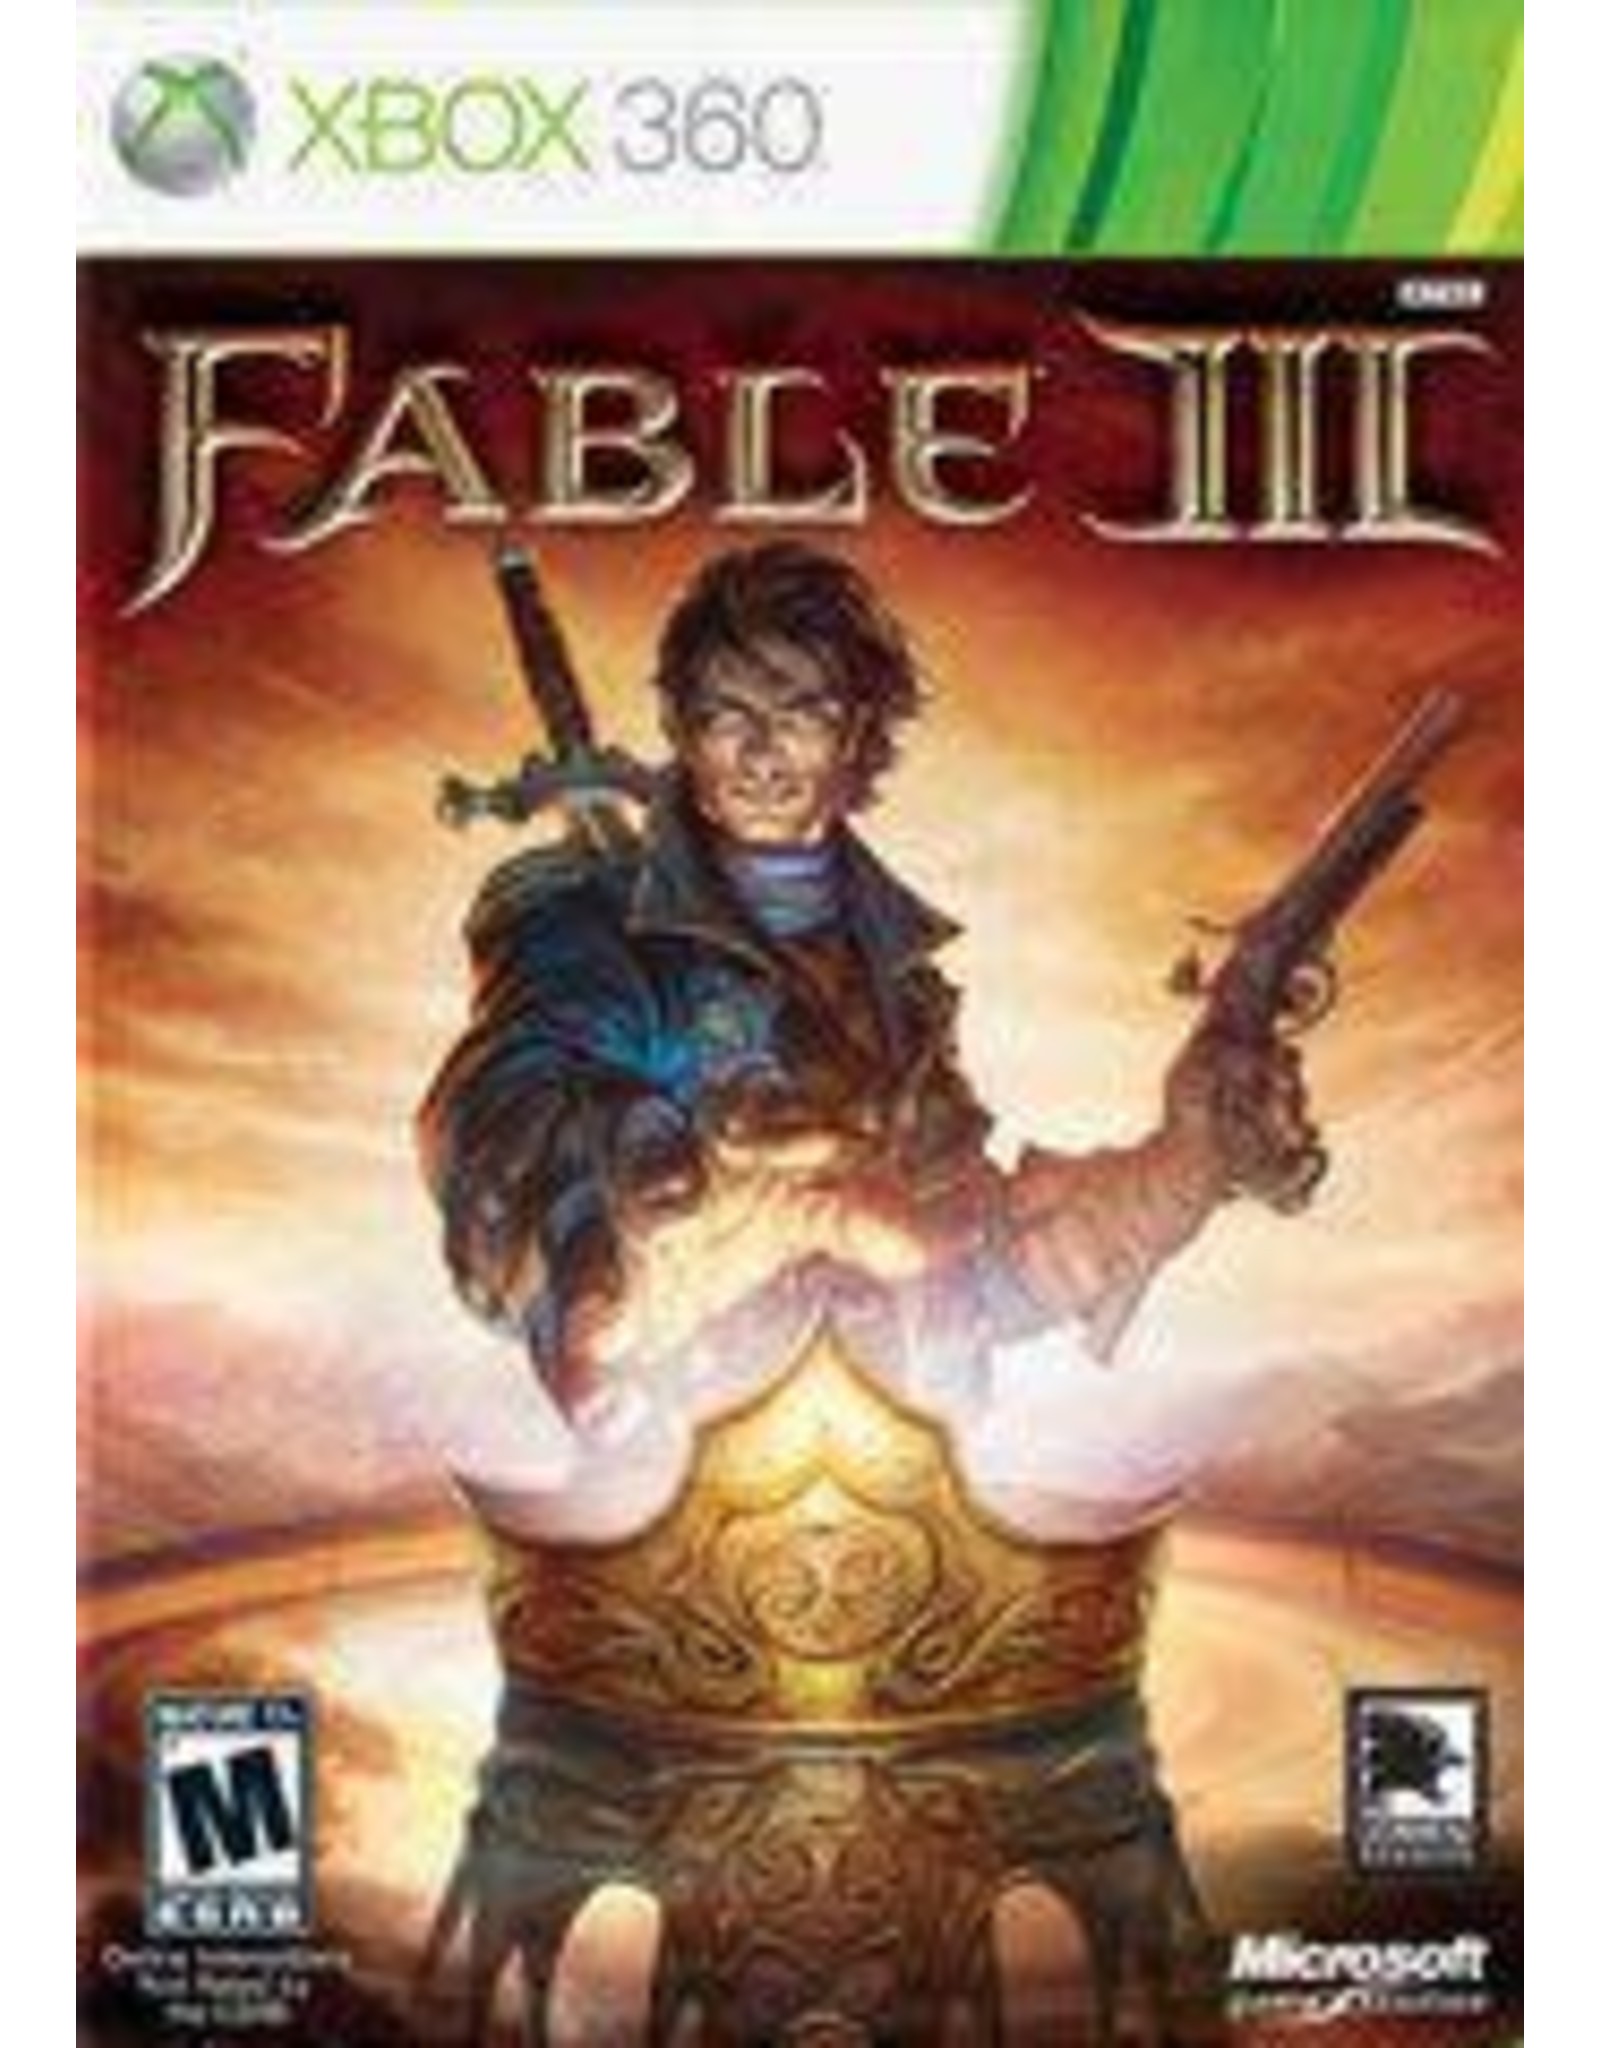 Xbox 360 Fable III (Used)